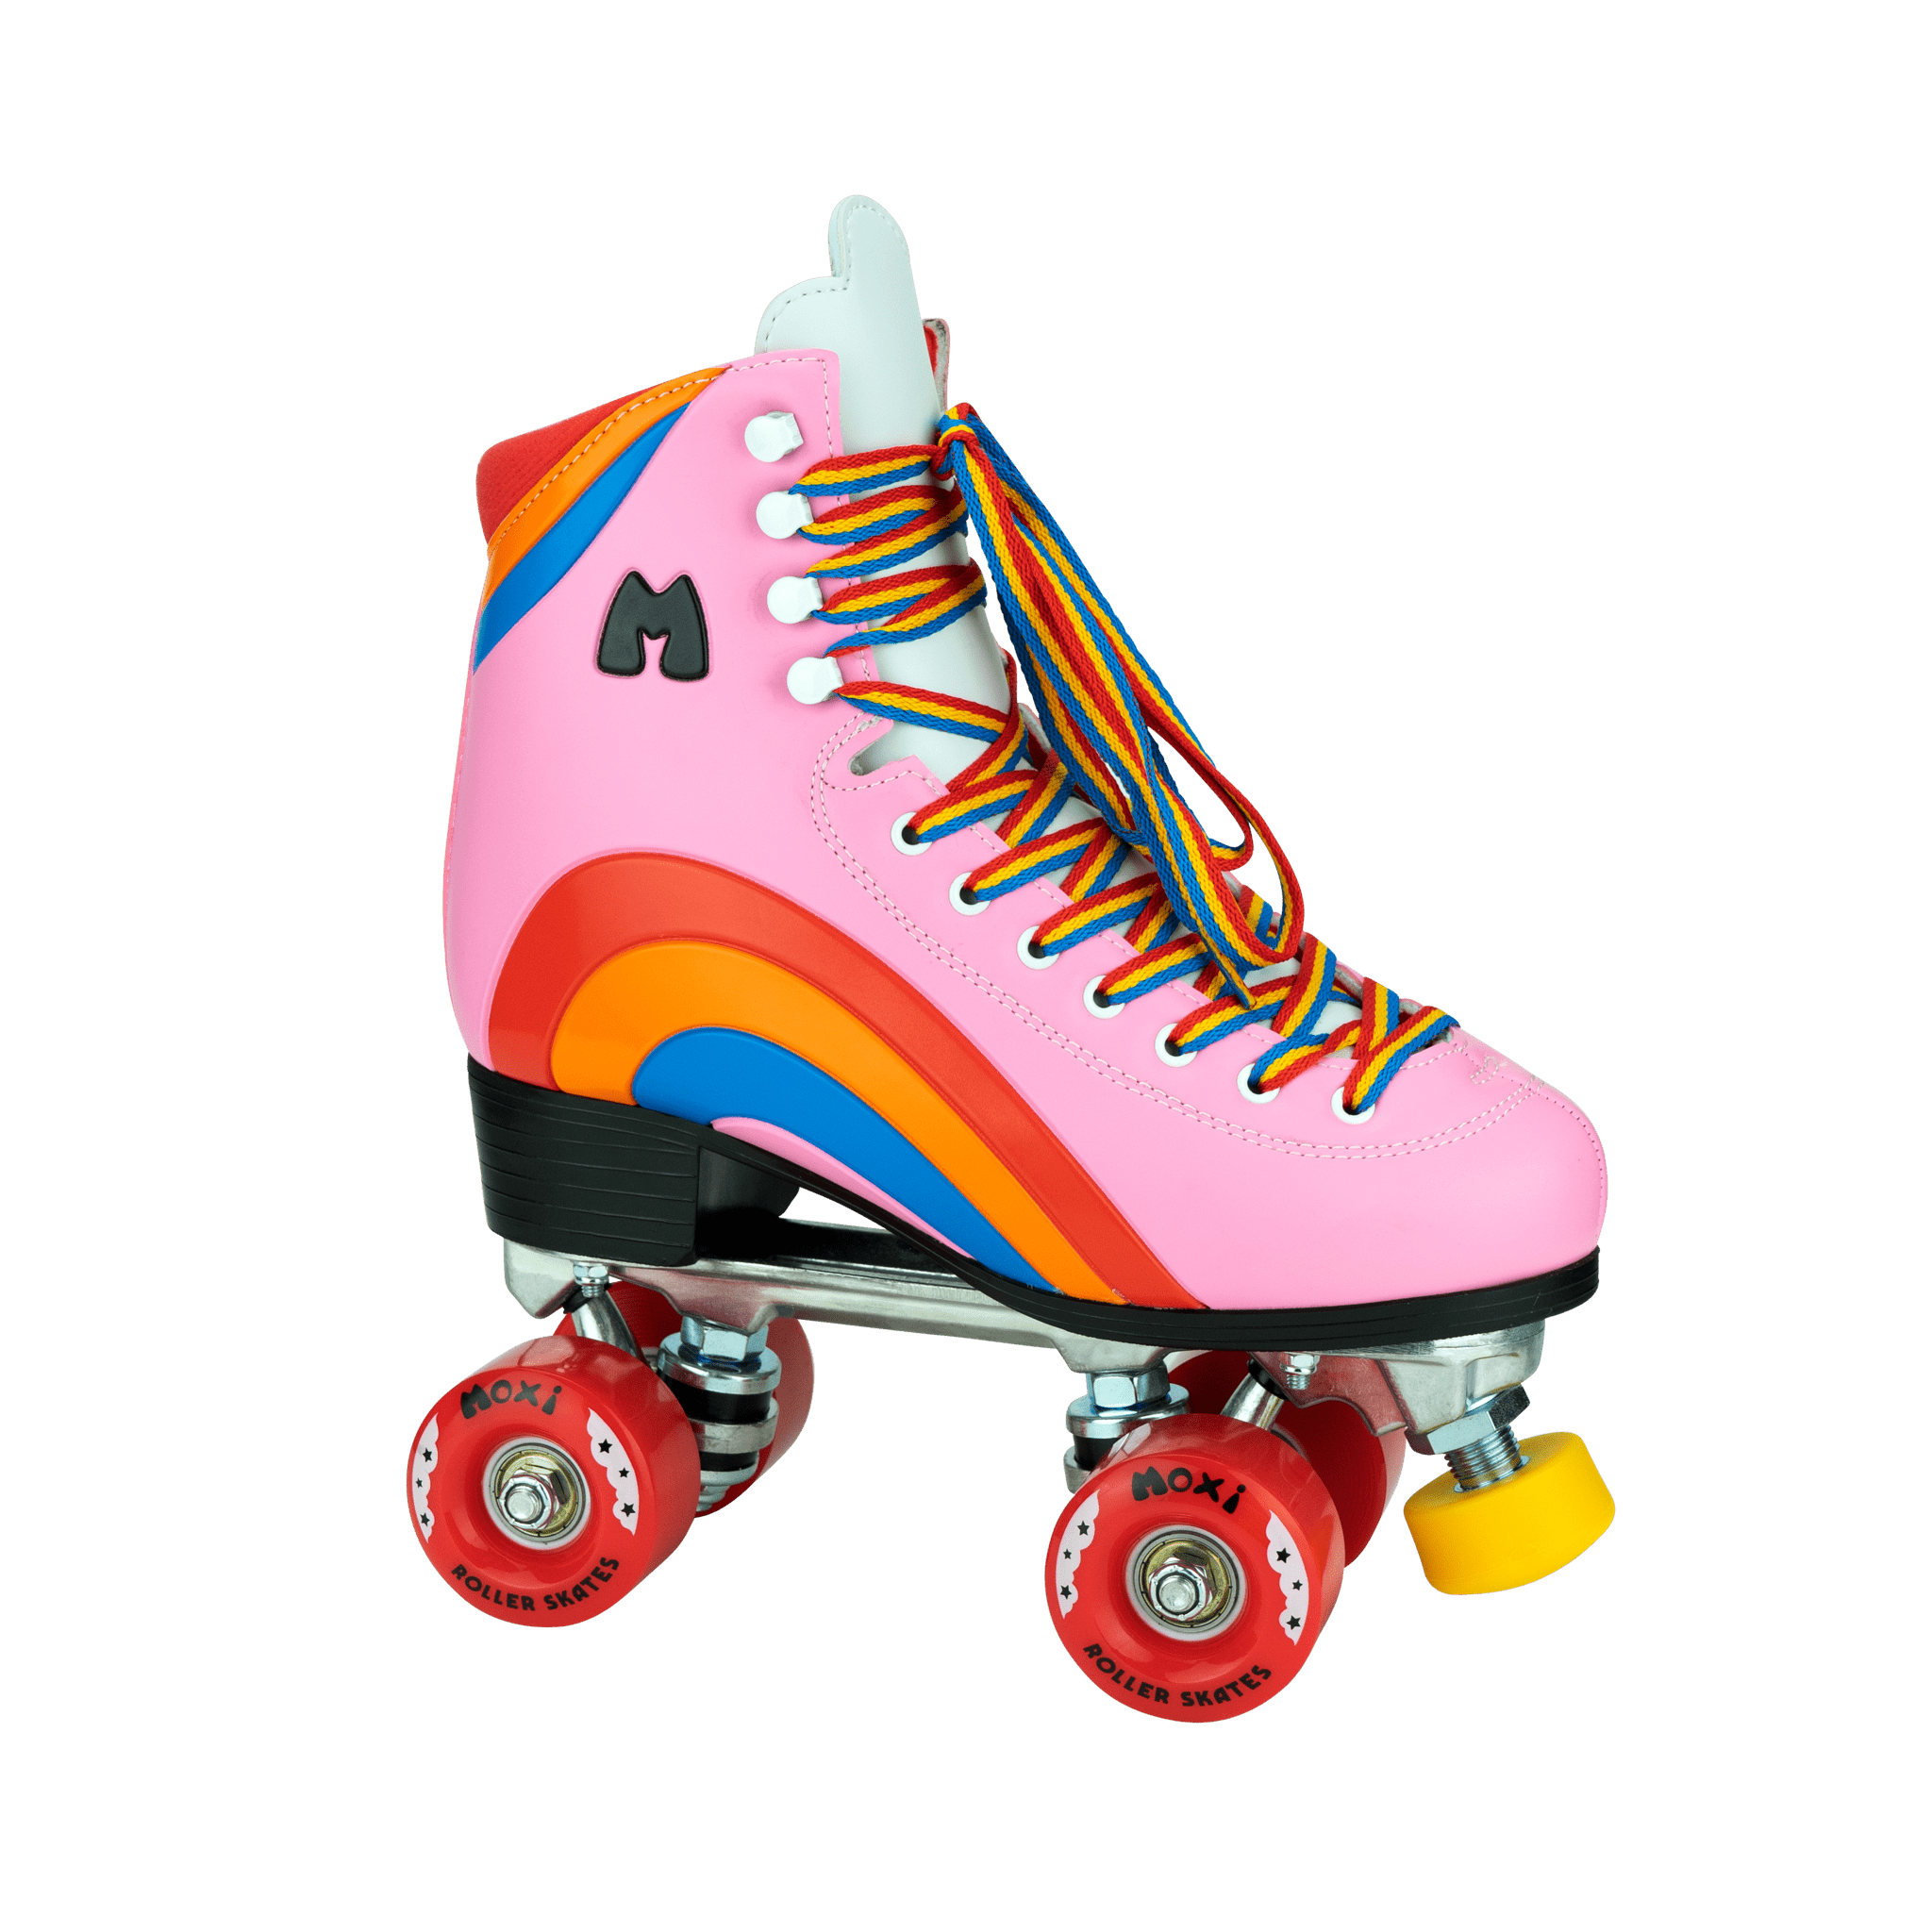 Rio Roller Quad Skates Roller Skates White/ Pink Size UK 4 EUR 37